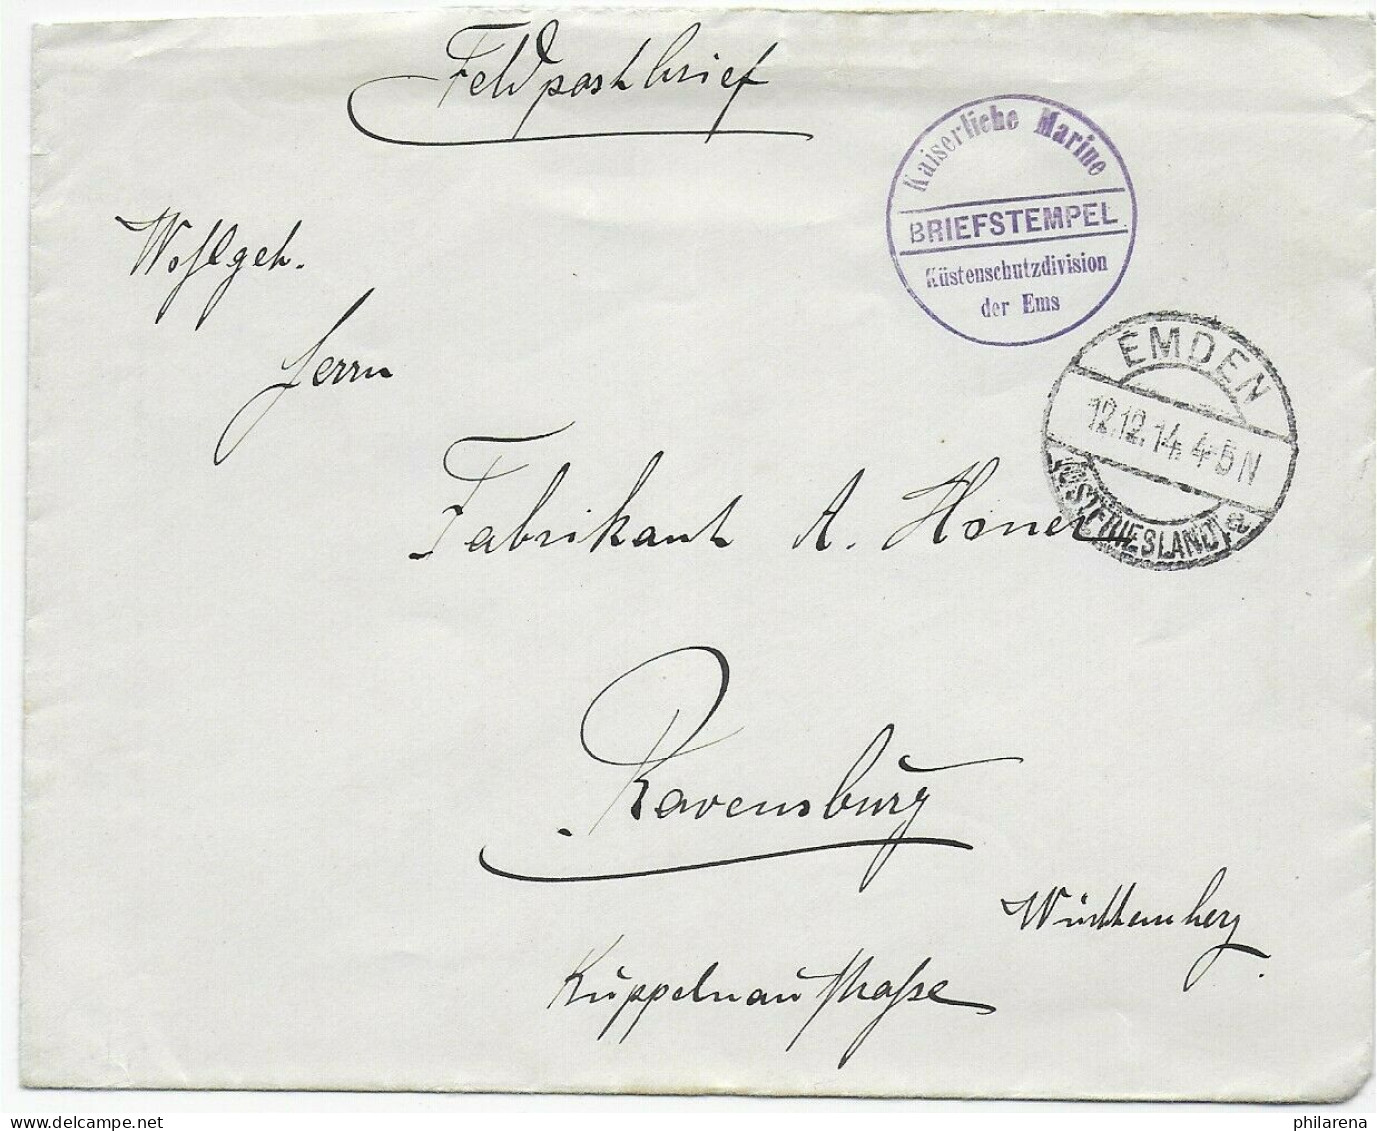 Feldpostbrief Kaiserliche Marine, Küstenschutzdivision Der Ems, Emden 1914 - Feldpost (franchise)